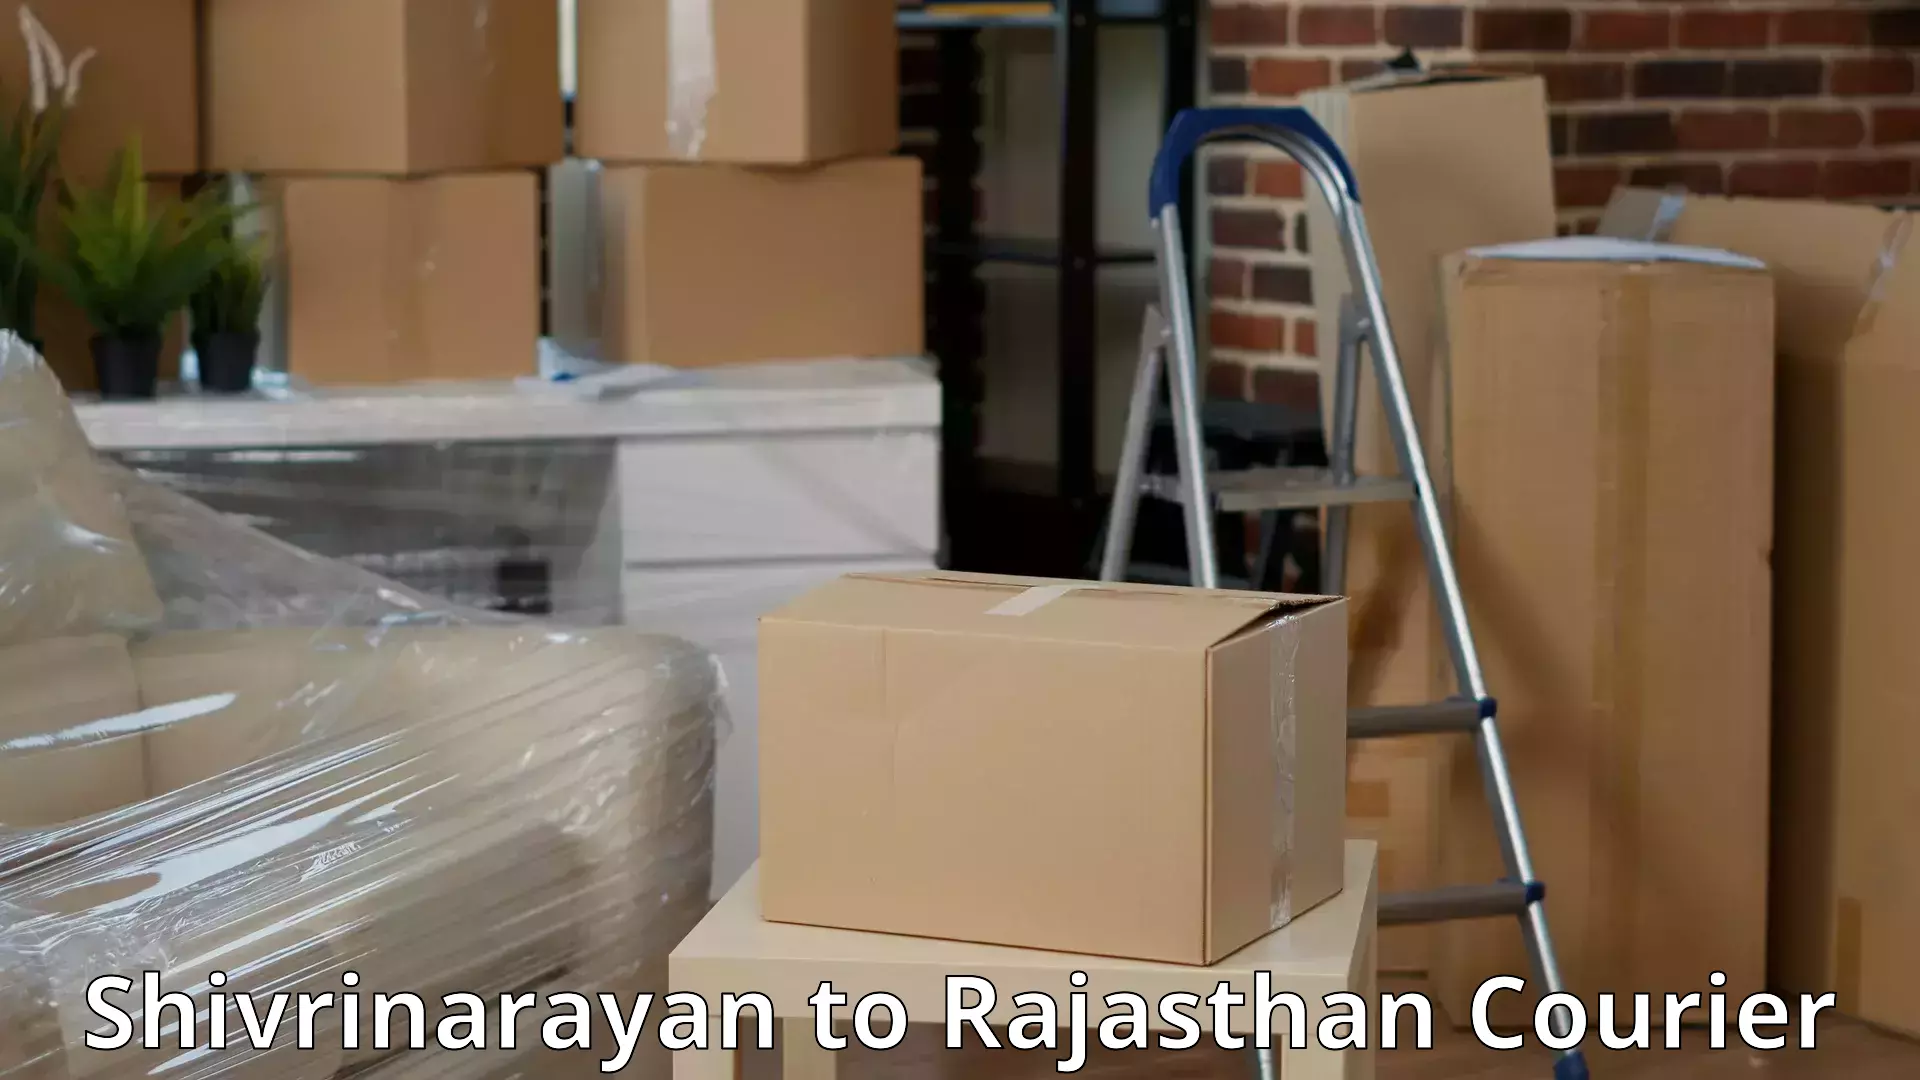 Furniture logistics in Shivrinarayan to Viratnagar